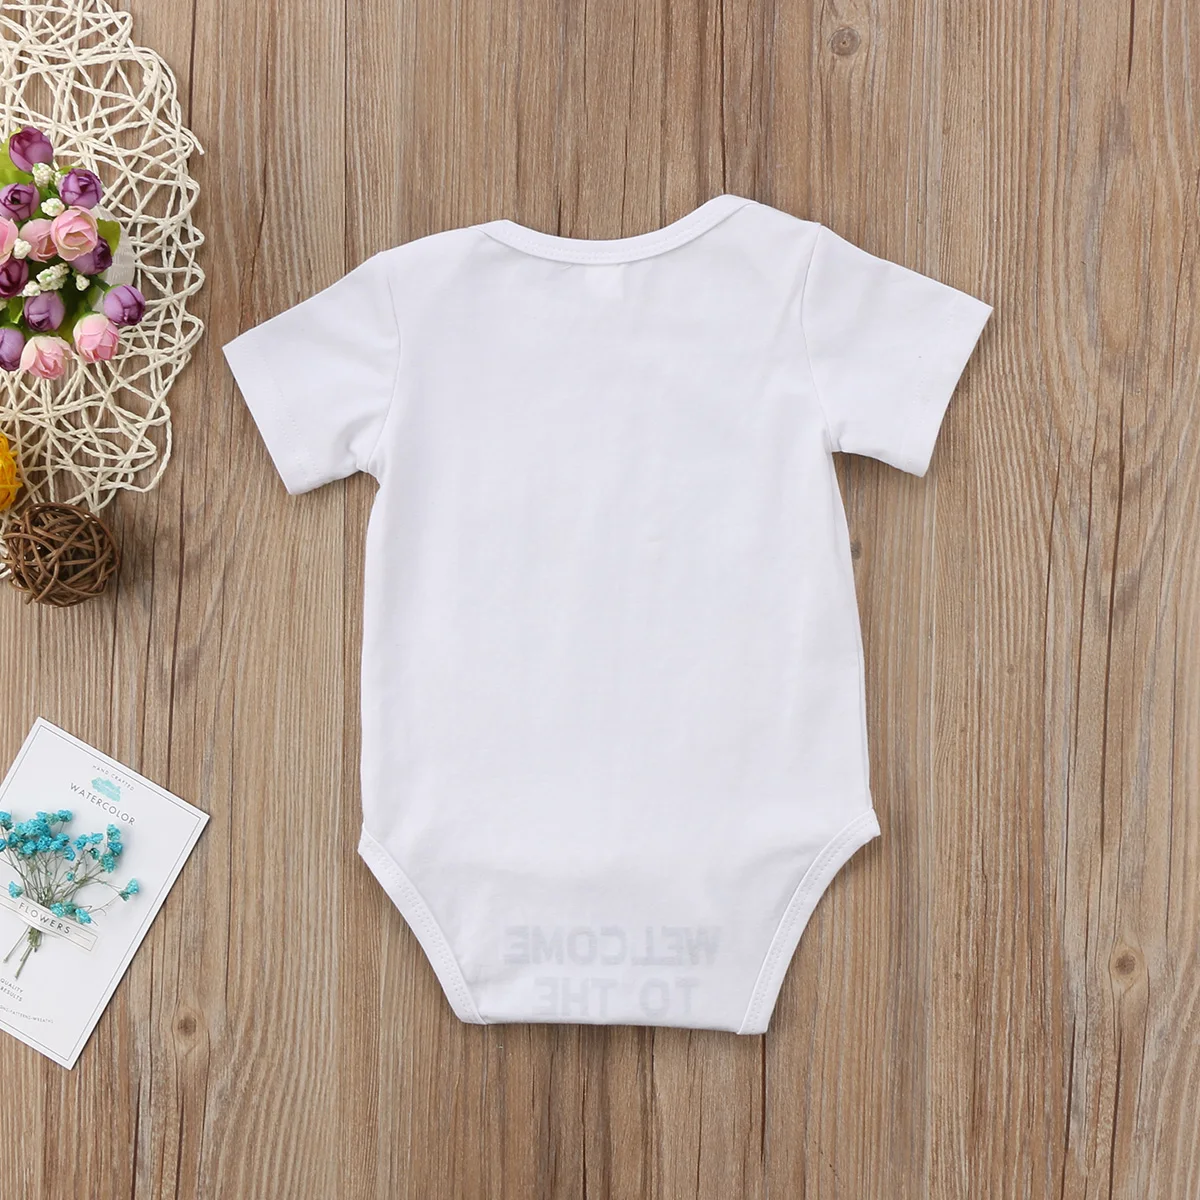 Pudcoco/Забавный комбинезон для новорожденных мальчиков и девочек 0-18 месяцев с принтом «Звездные войны», летняя одежда